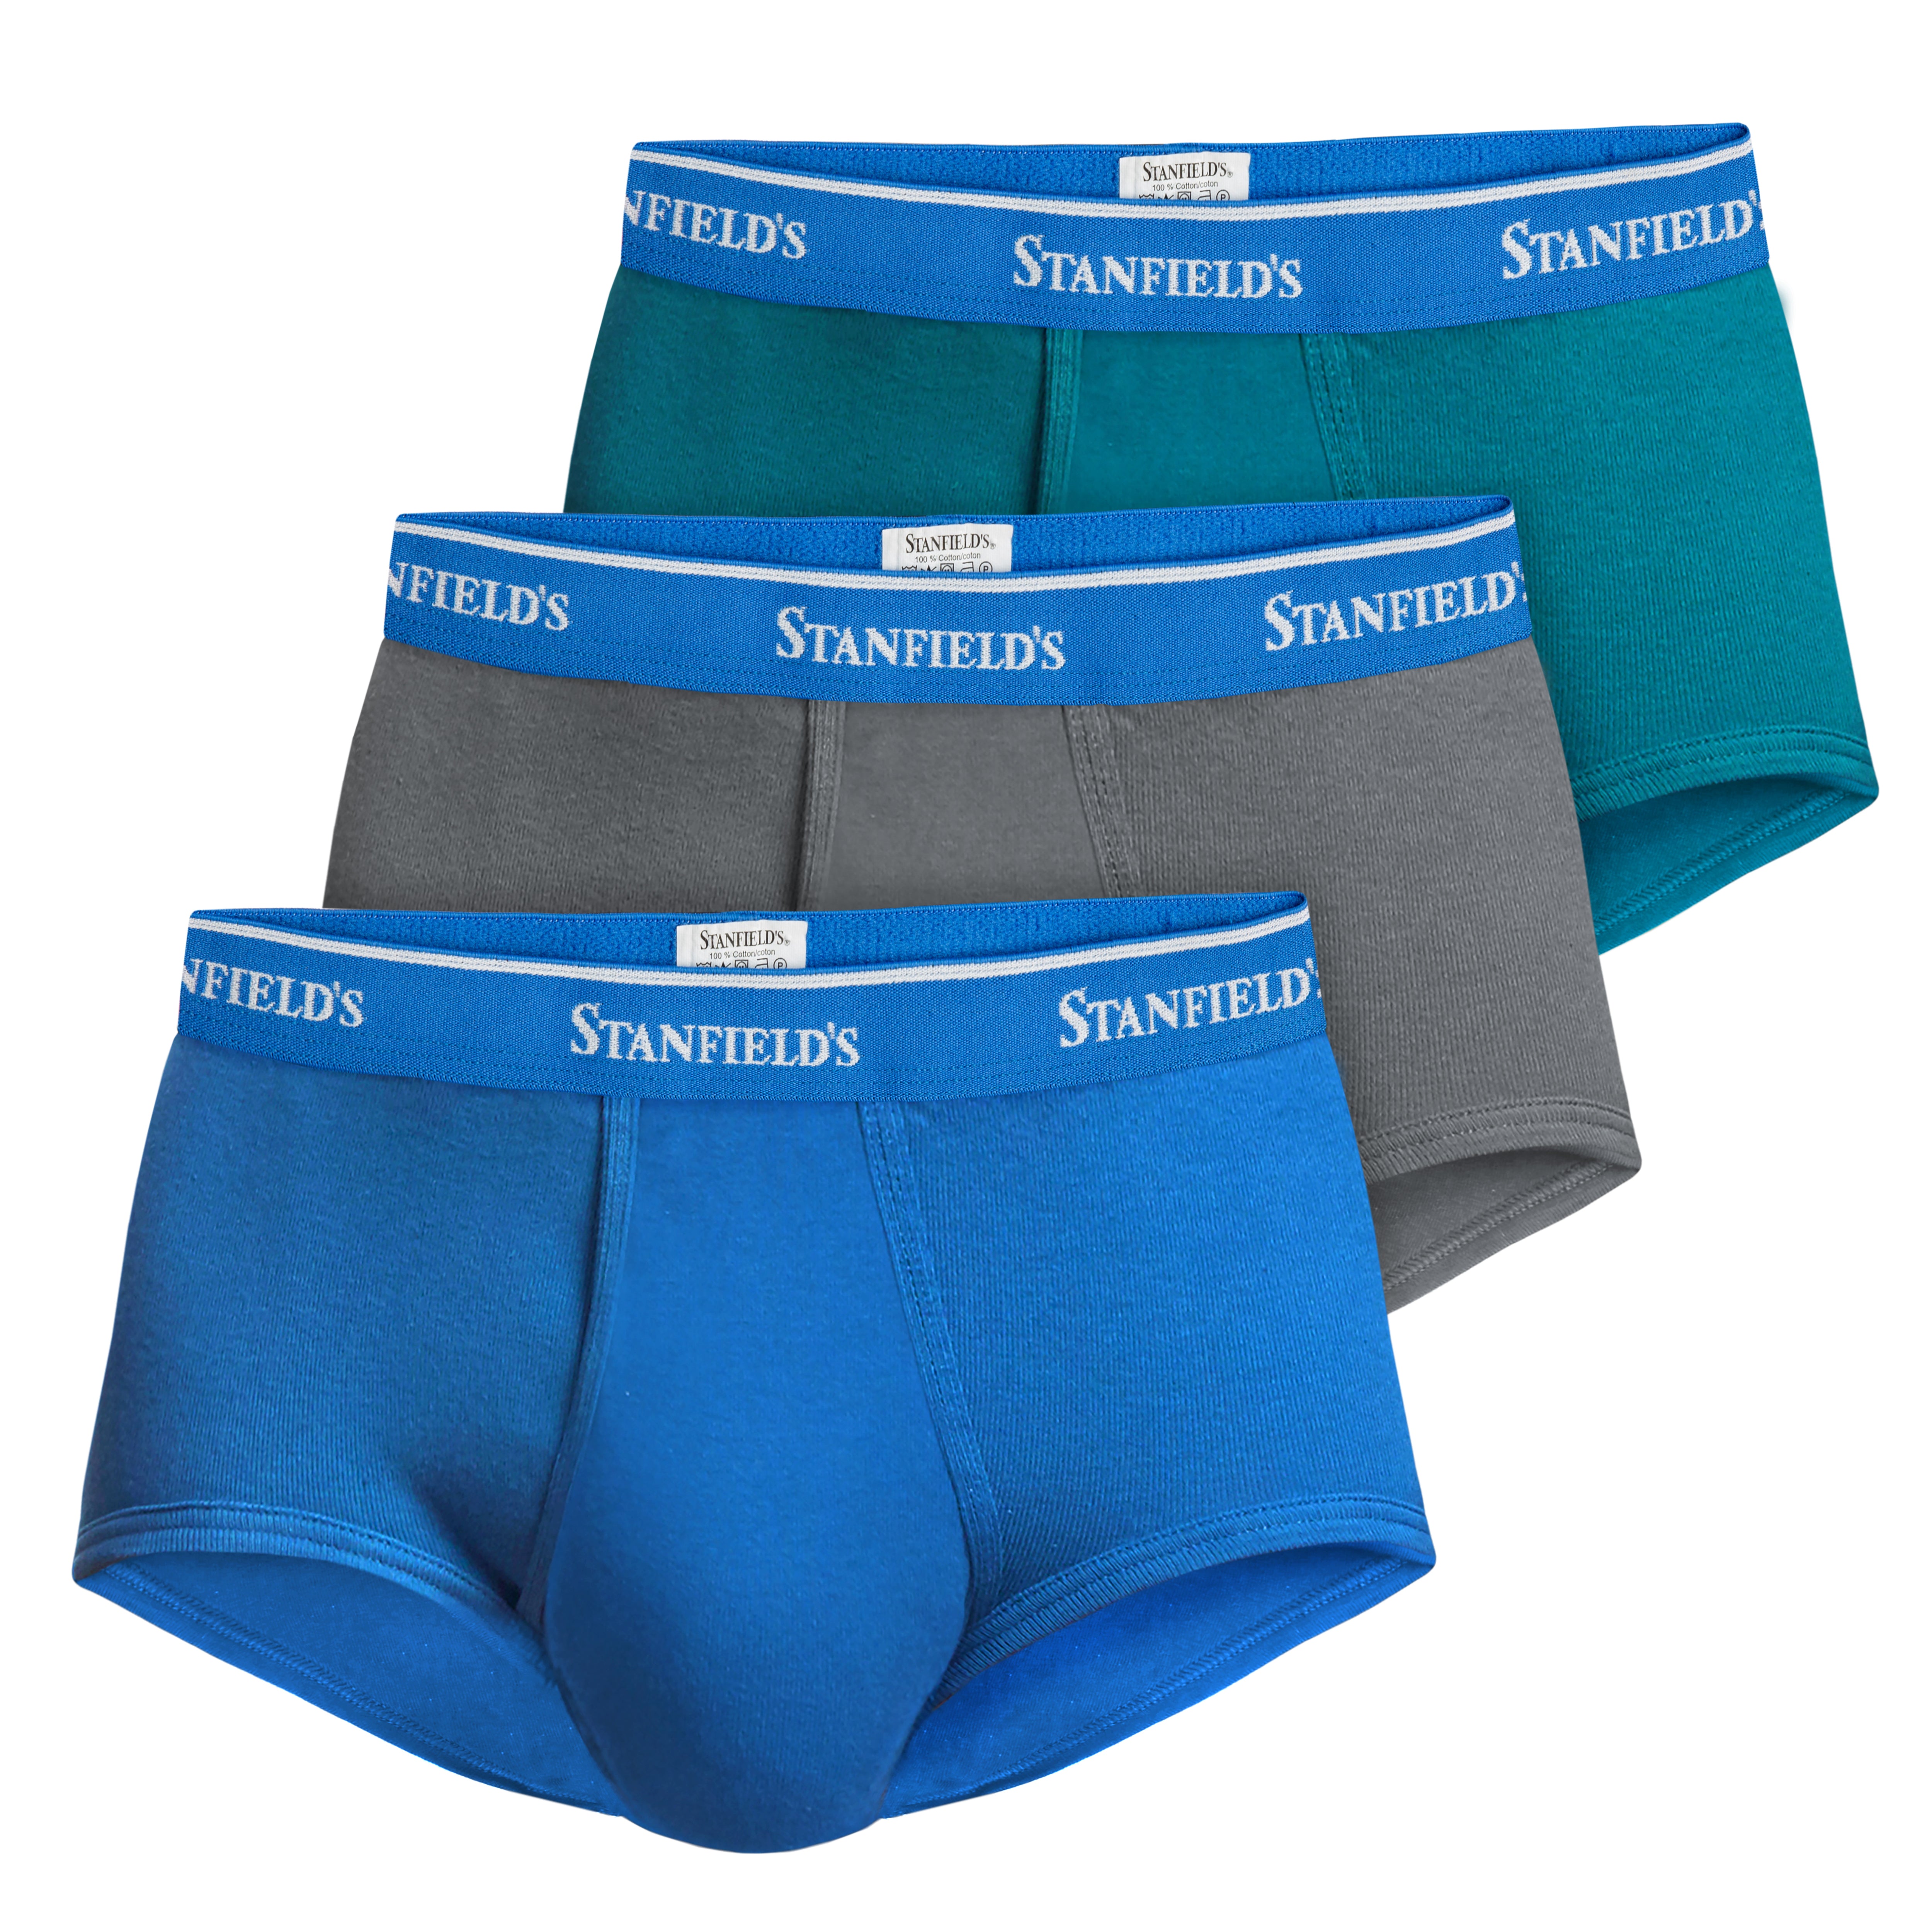 Stanfield's Men's Premium Cotton Medi Brief Underwear, Style 2534 